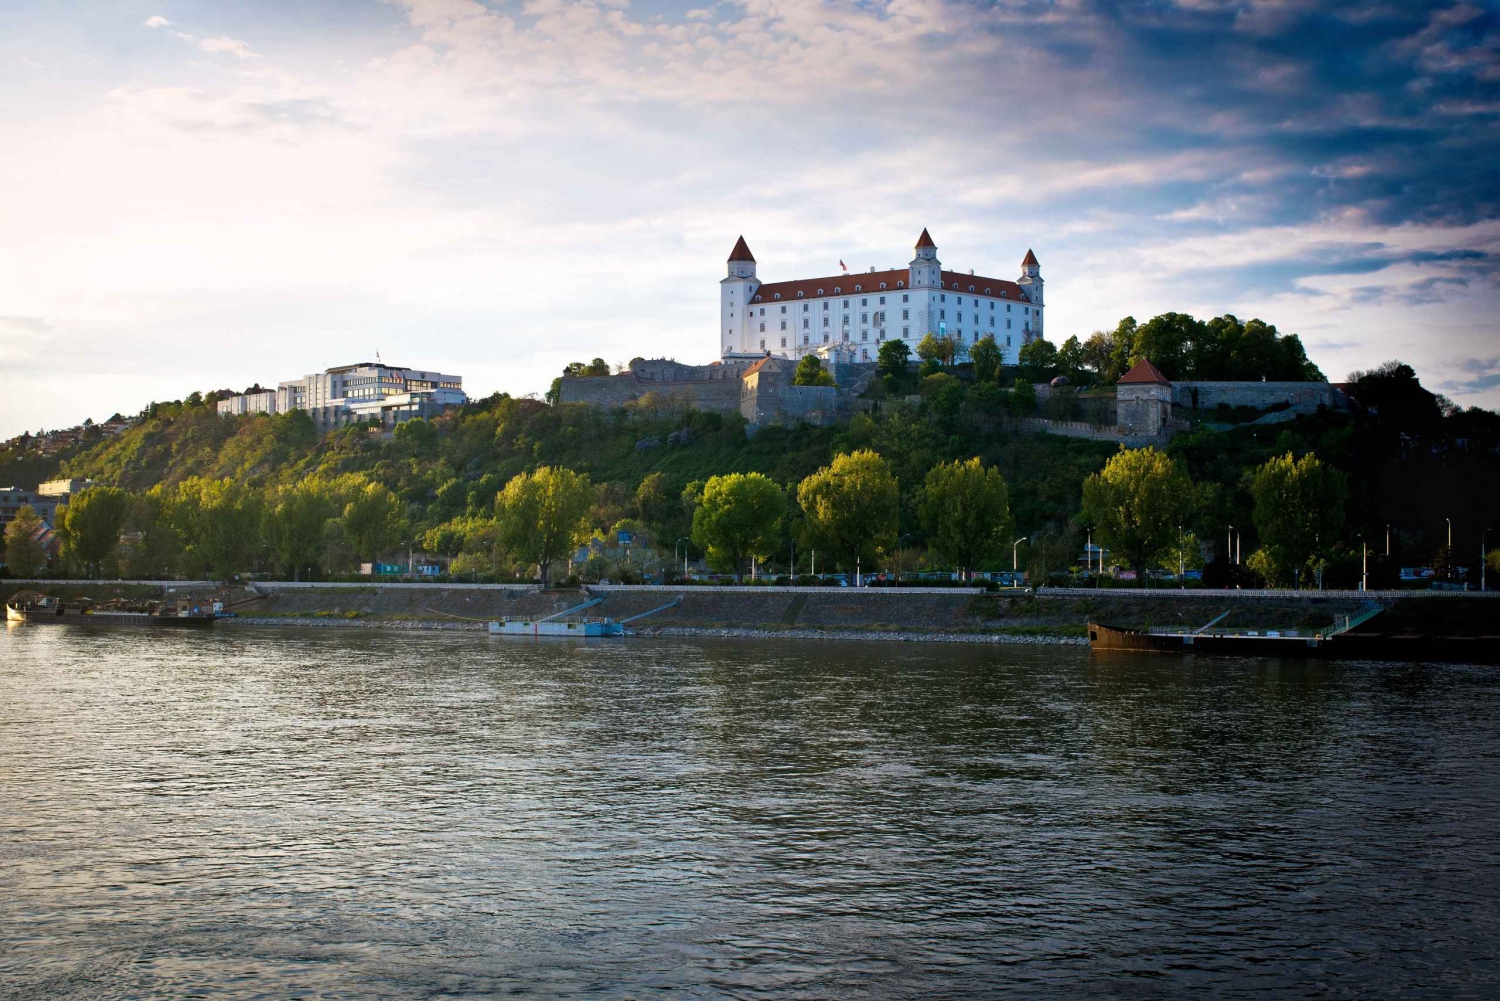 Viena: viagem de um dia a Bratislava com guia particular e transporte